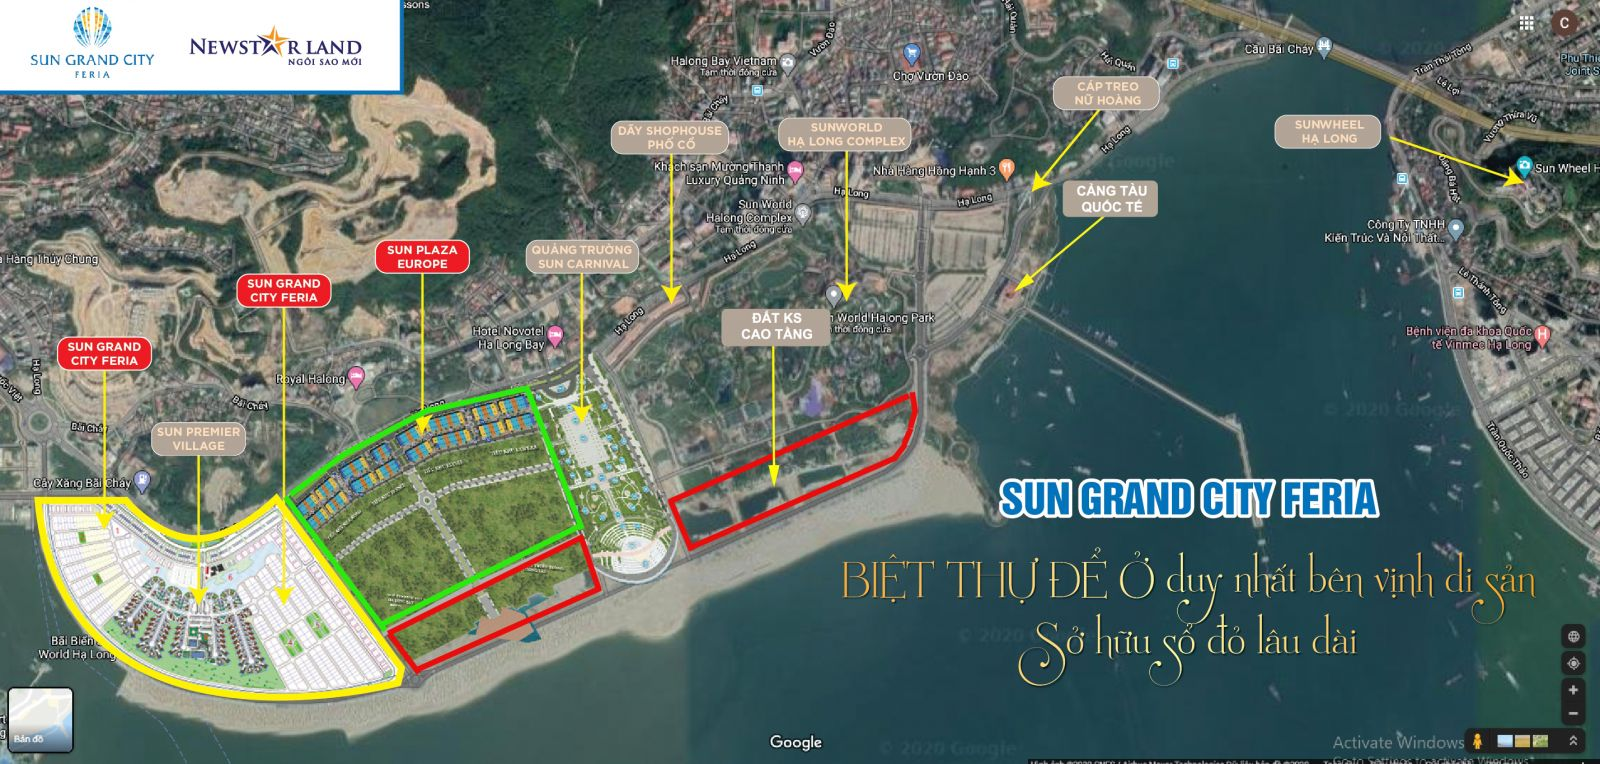 Sun Group Hạ Long là siêu dự án được giới đầu tư đánh giá cao